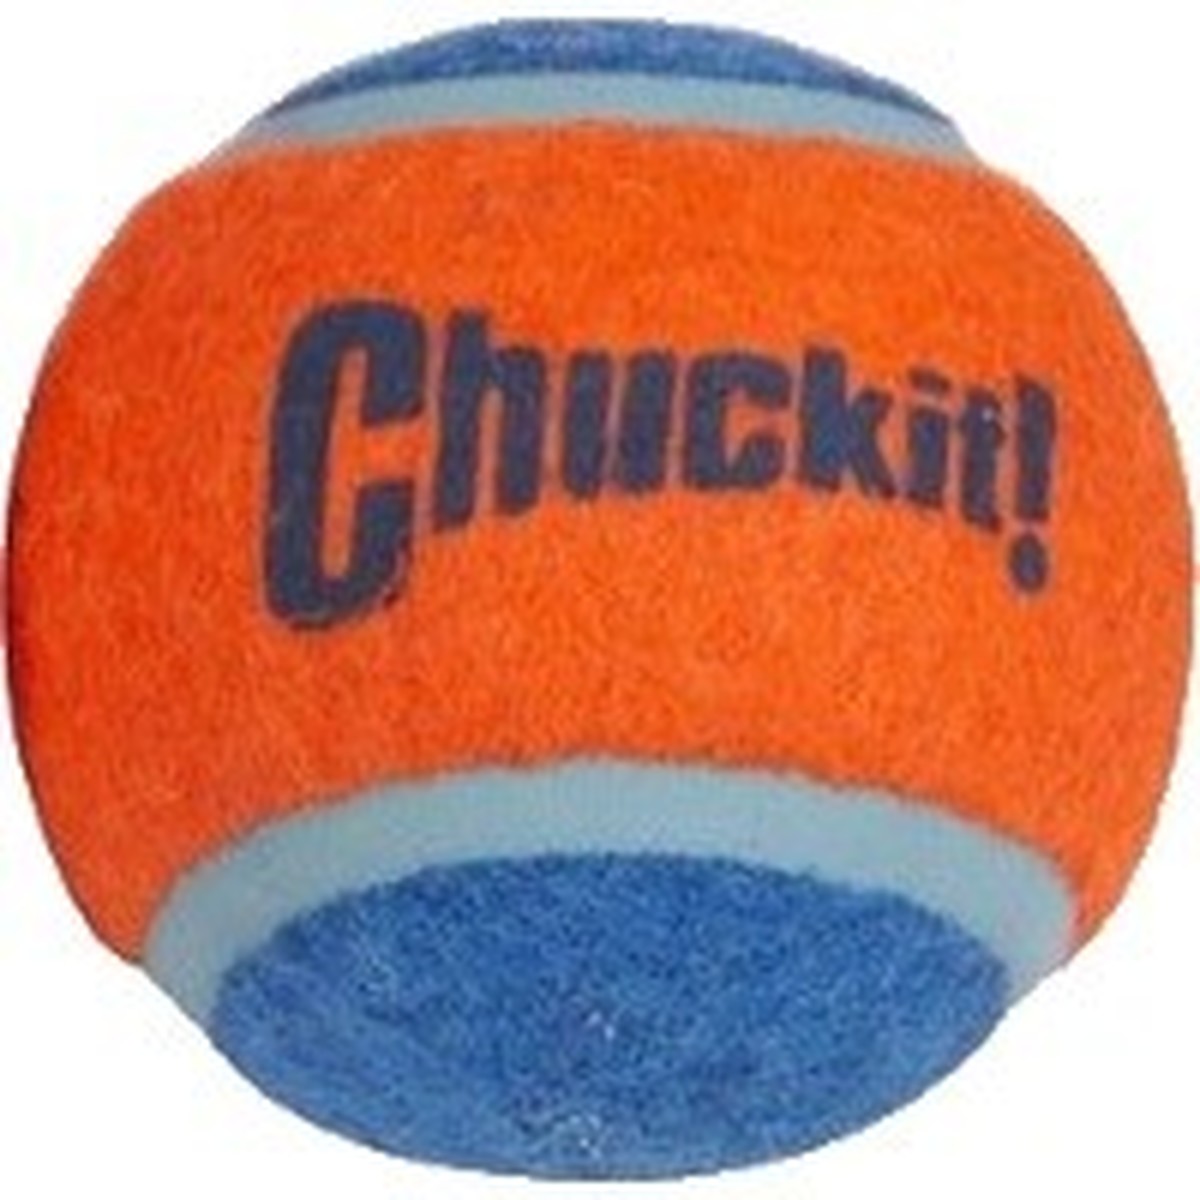 chuck it tennis ball size